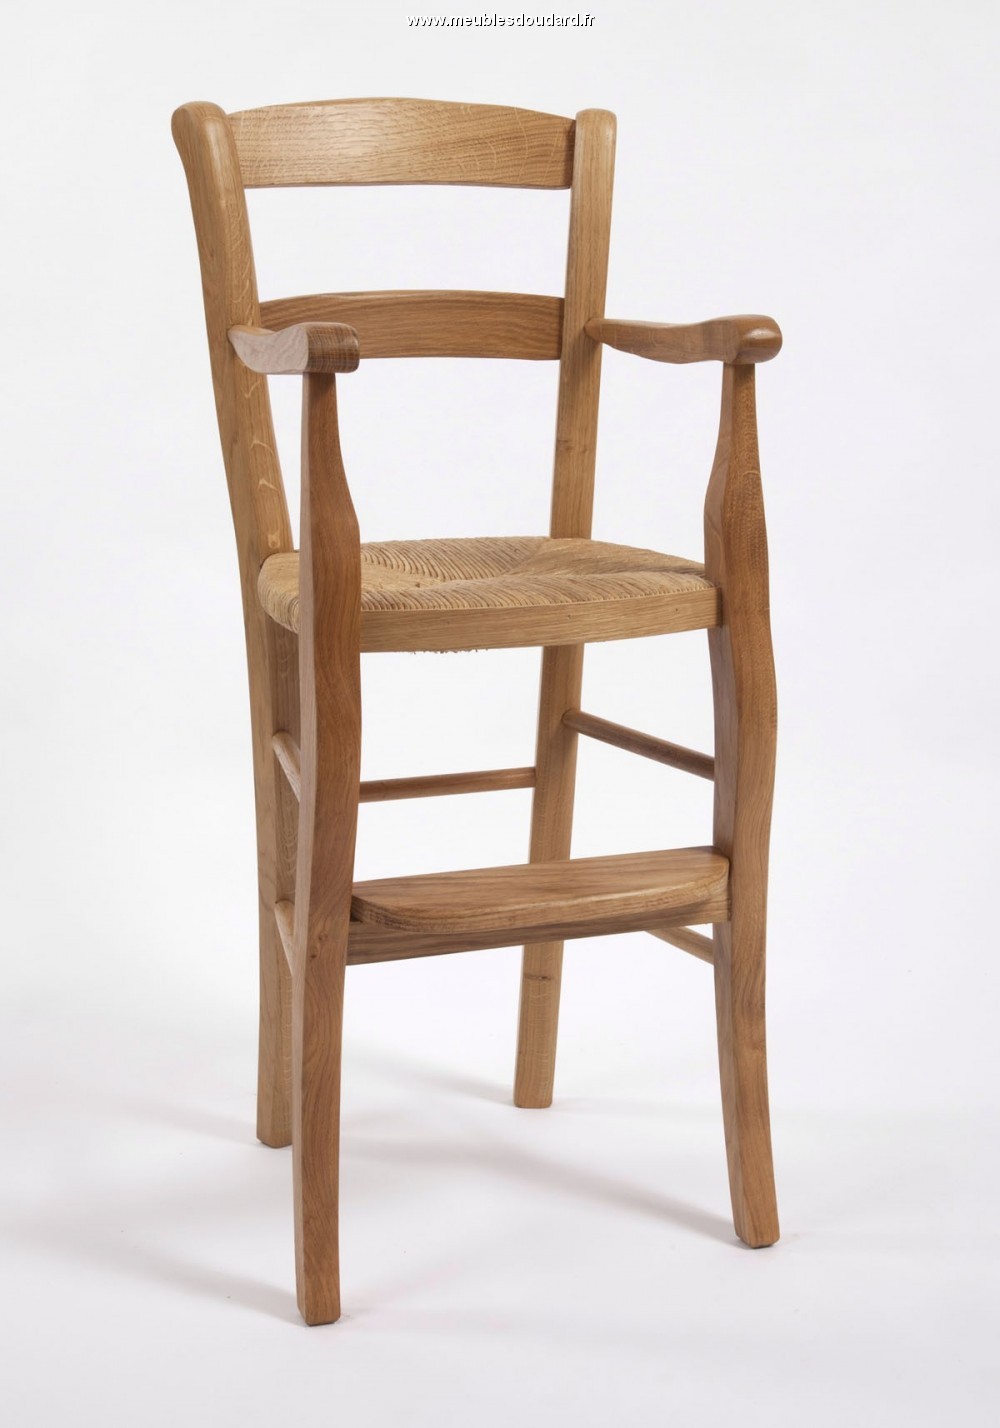 Chaise haute en bois enfant réf 55